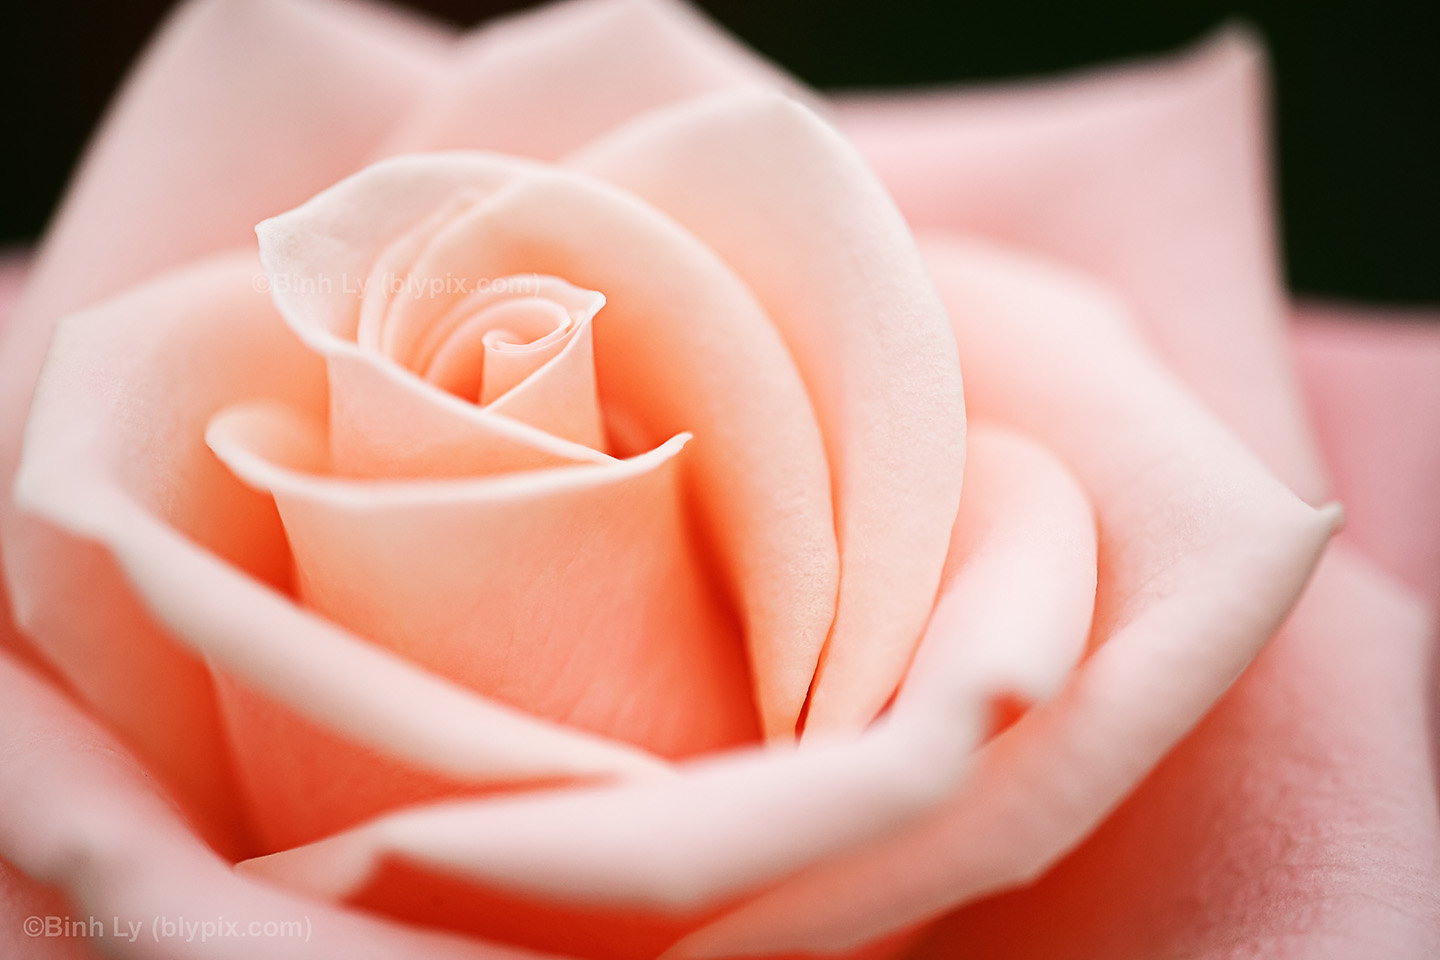 Soft Orange Pink Petals Curl Around This Rose Closeup Taken At The